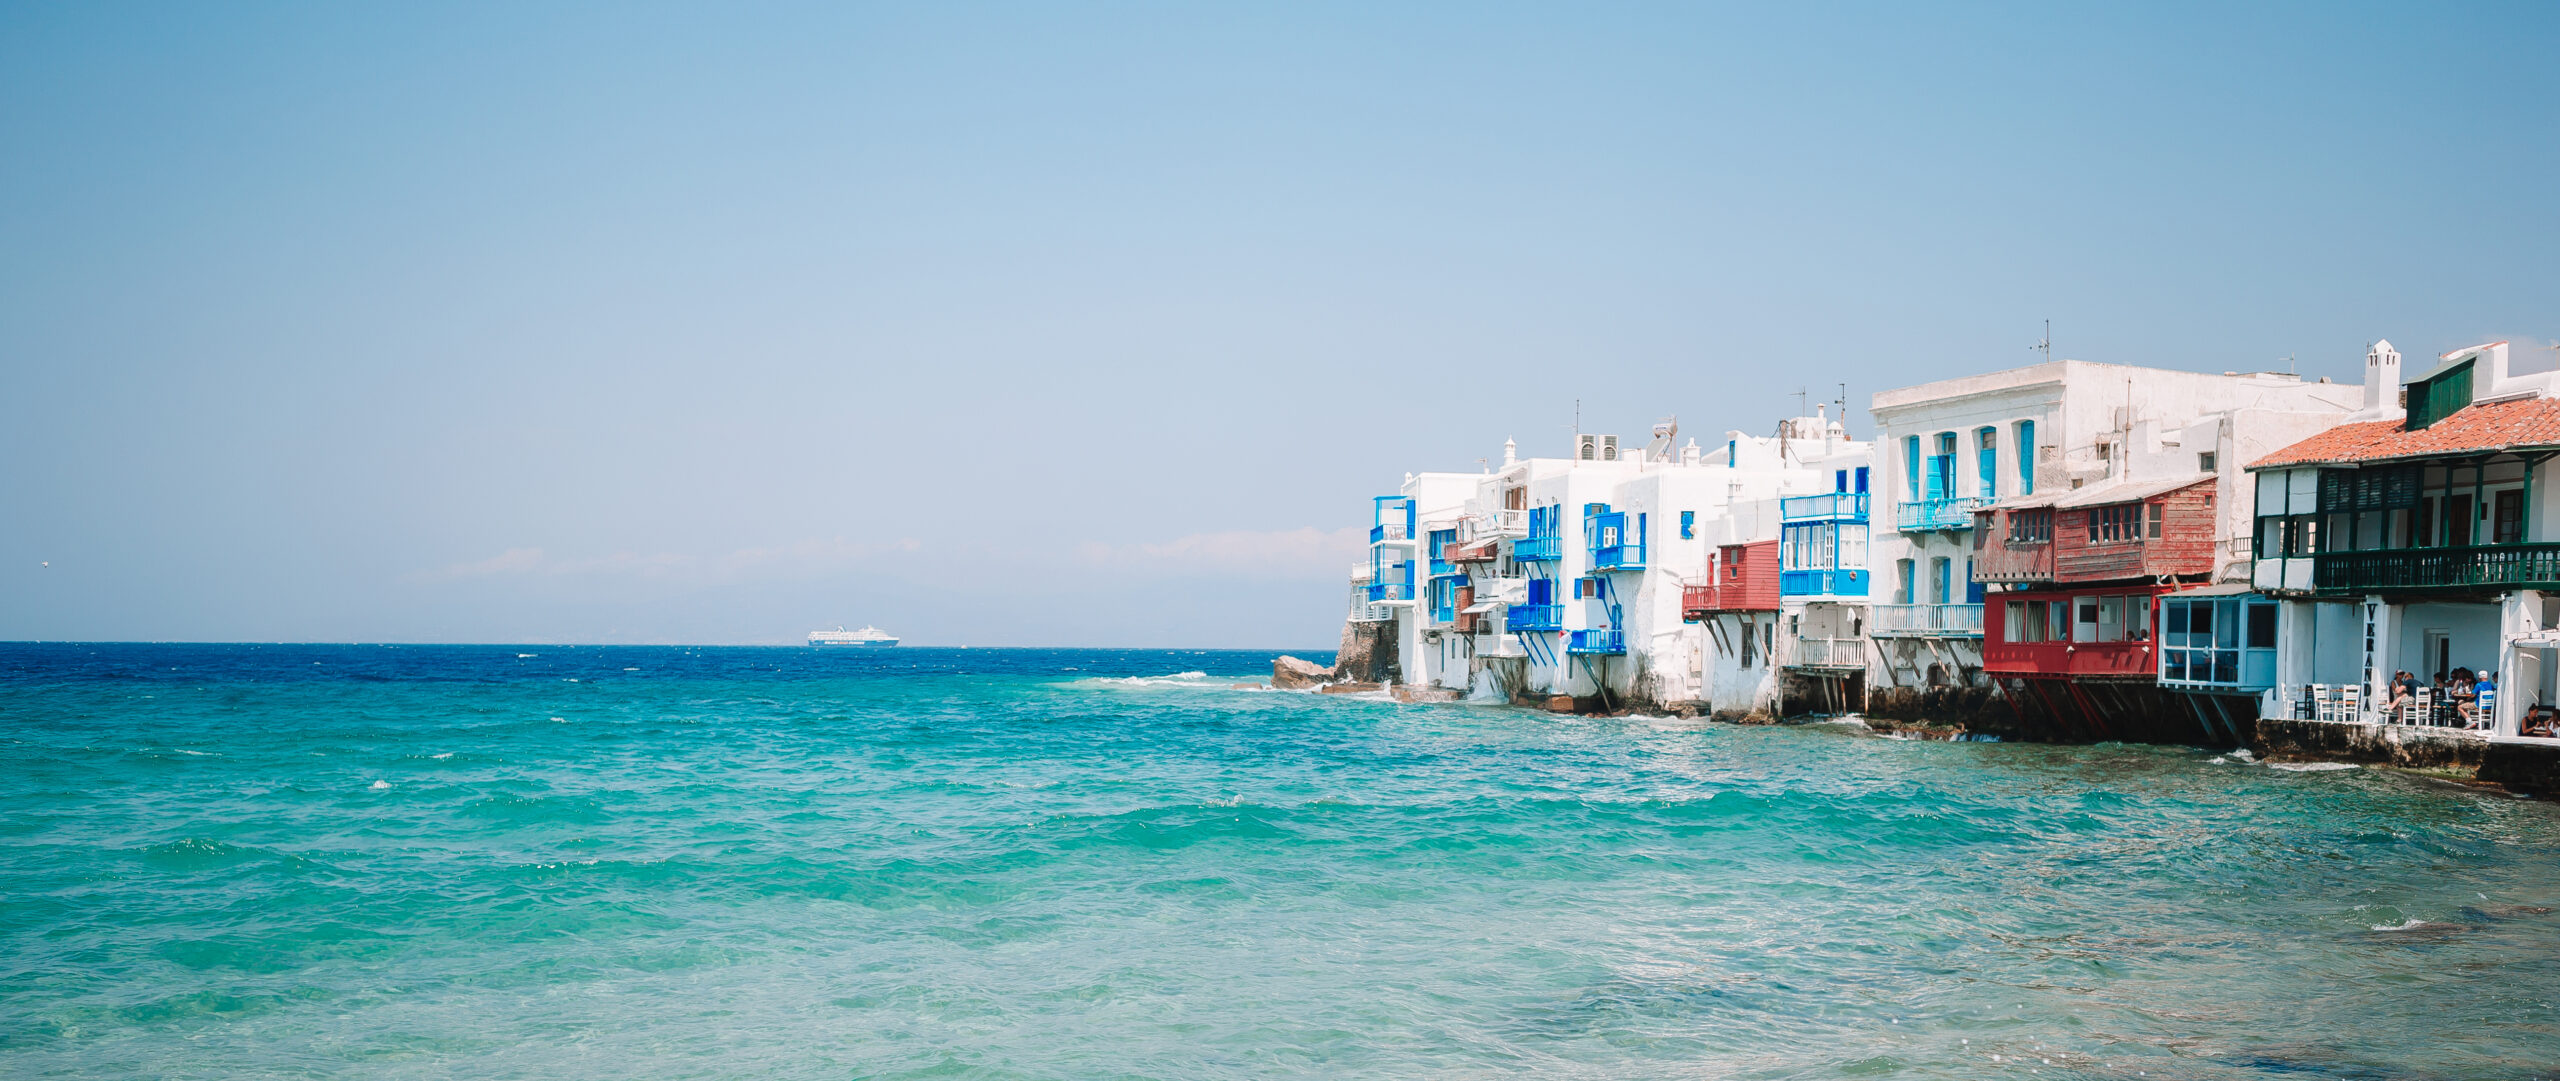 Beautiful Little Venice in Mykonos Island on Greece, Cyclades